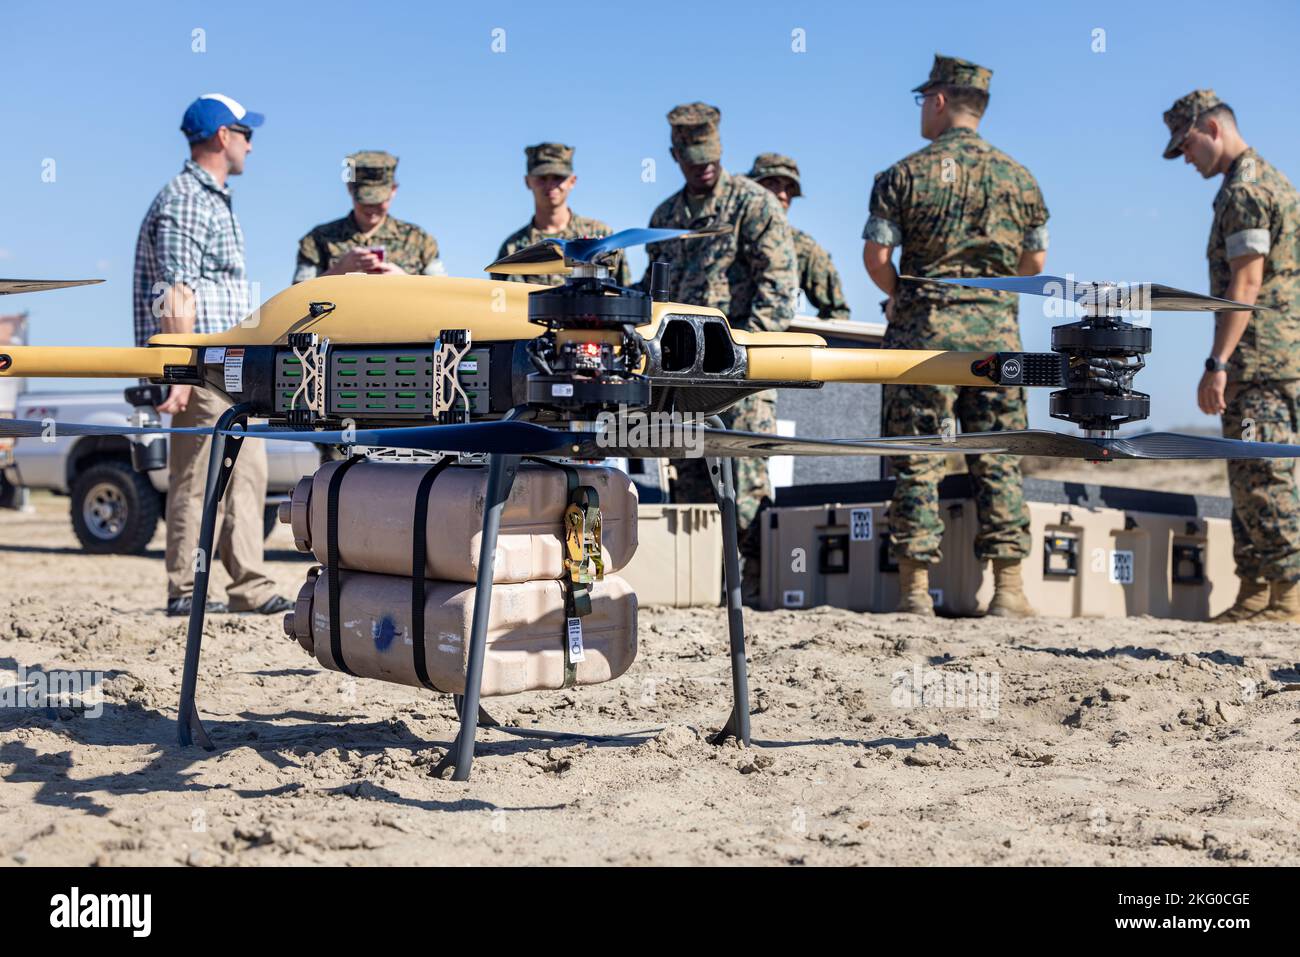 U.S. Marines with 1st Transportation Battaglione, Combat Logistics Regiment 1, 1st Marine Logistics Group, estrarre un drone Tactical Resupply Vehicle (TRV-150) durante l'esercizio di offload del cuscino d'aria dell'imbarcazione di atterraggio (LCAC) durante la convergenza del progetto 2022 su Camp Pendleton, California, 18 ottobre 2022. Nel corso del PC22 molti sistemi sono stati sperimentati per determinare come le future capacità di comando e controllo possano essere integrate con i partner all-Service e multinazionali. Questo corso offre inoltre a Marines e ai marinai l'opportunità di praticare un trasferimento regolare da nave a terra di attrezzature e personale. Foto Stock